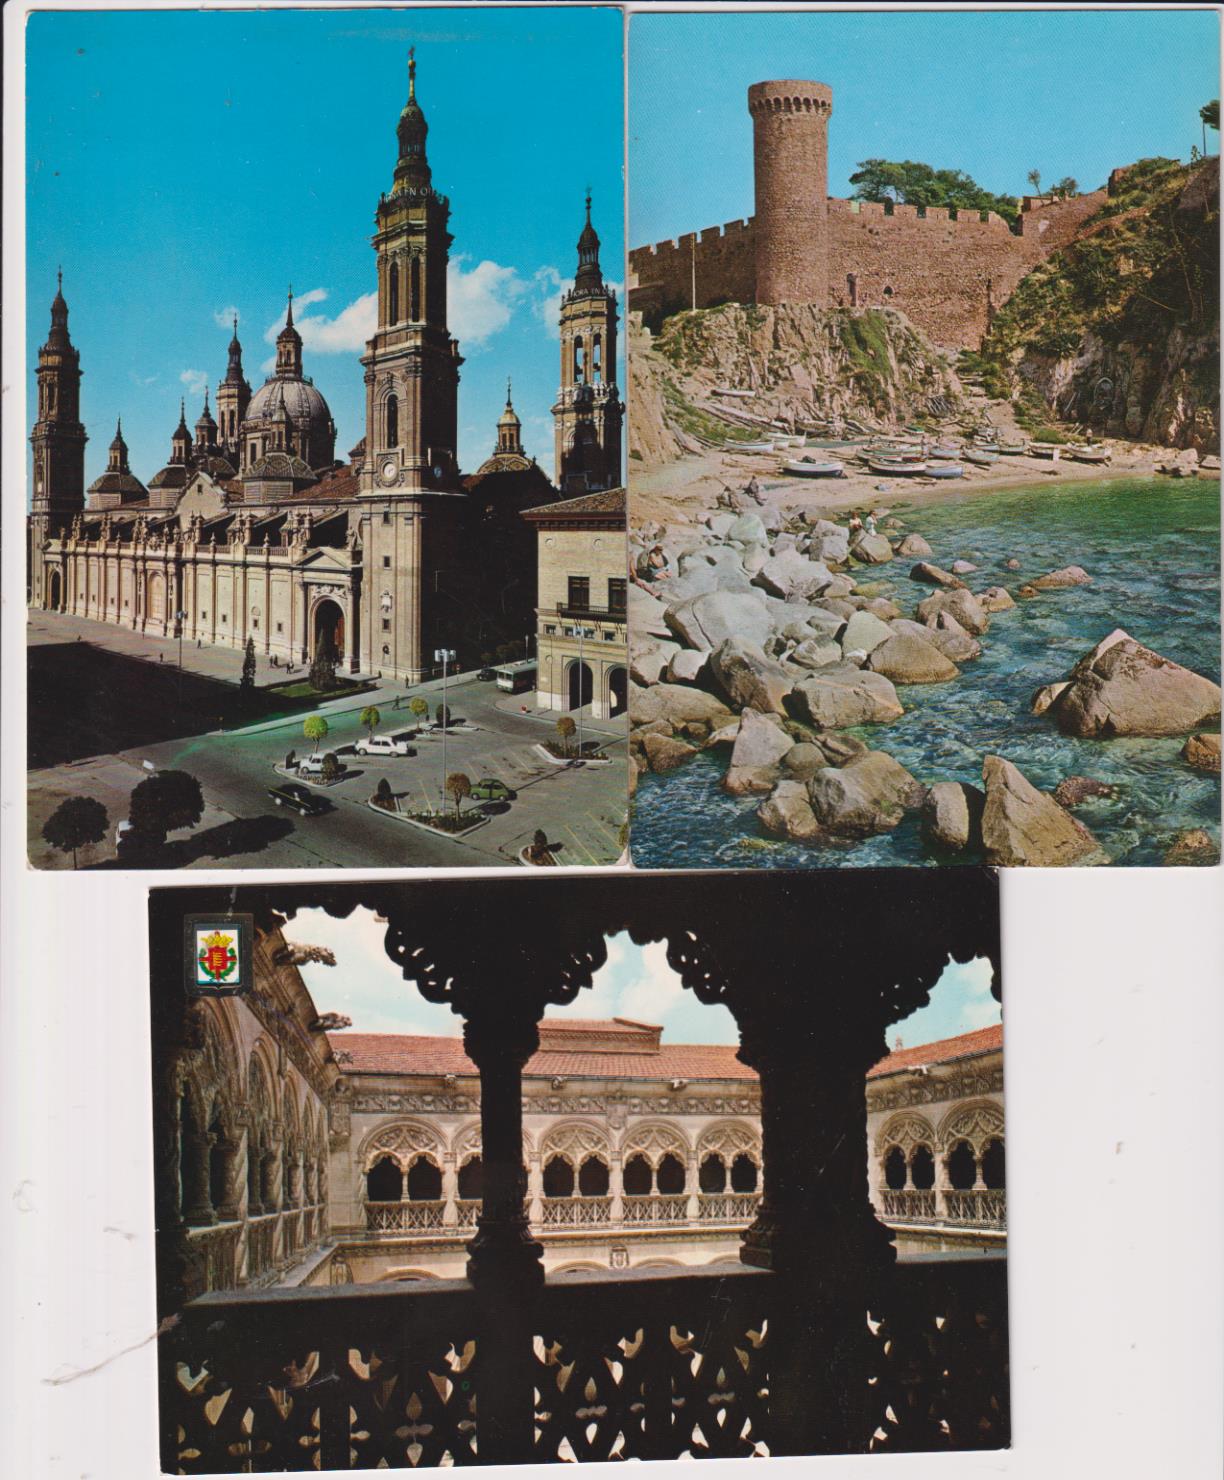 Lote de 3 Postales: Castillo de Tossa de mar, Zaragoza, El Pilar y Valladolid, Claustro de San Gregorio. Años 60-70